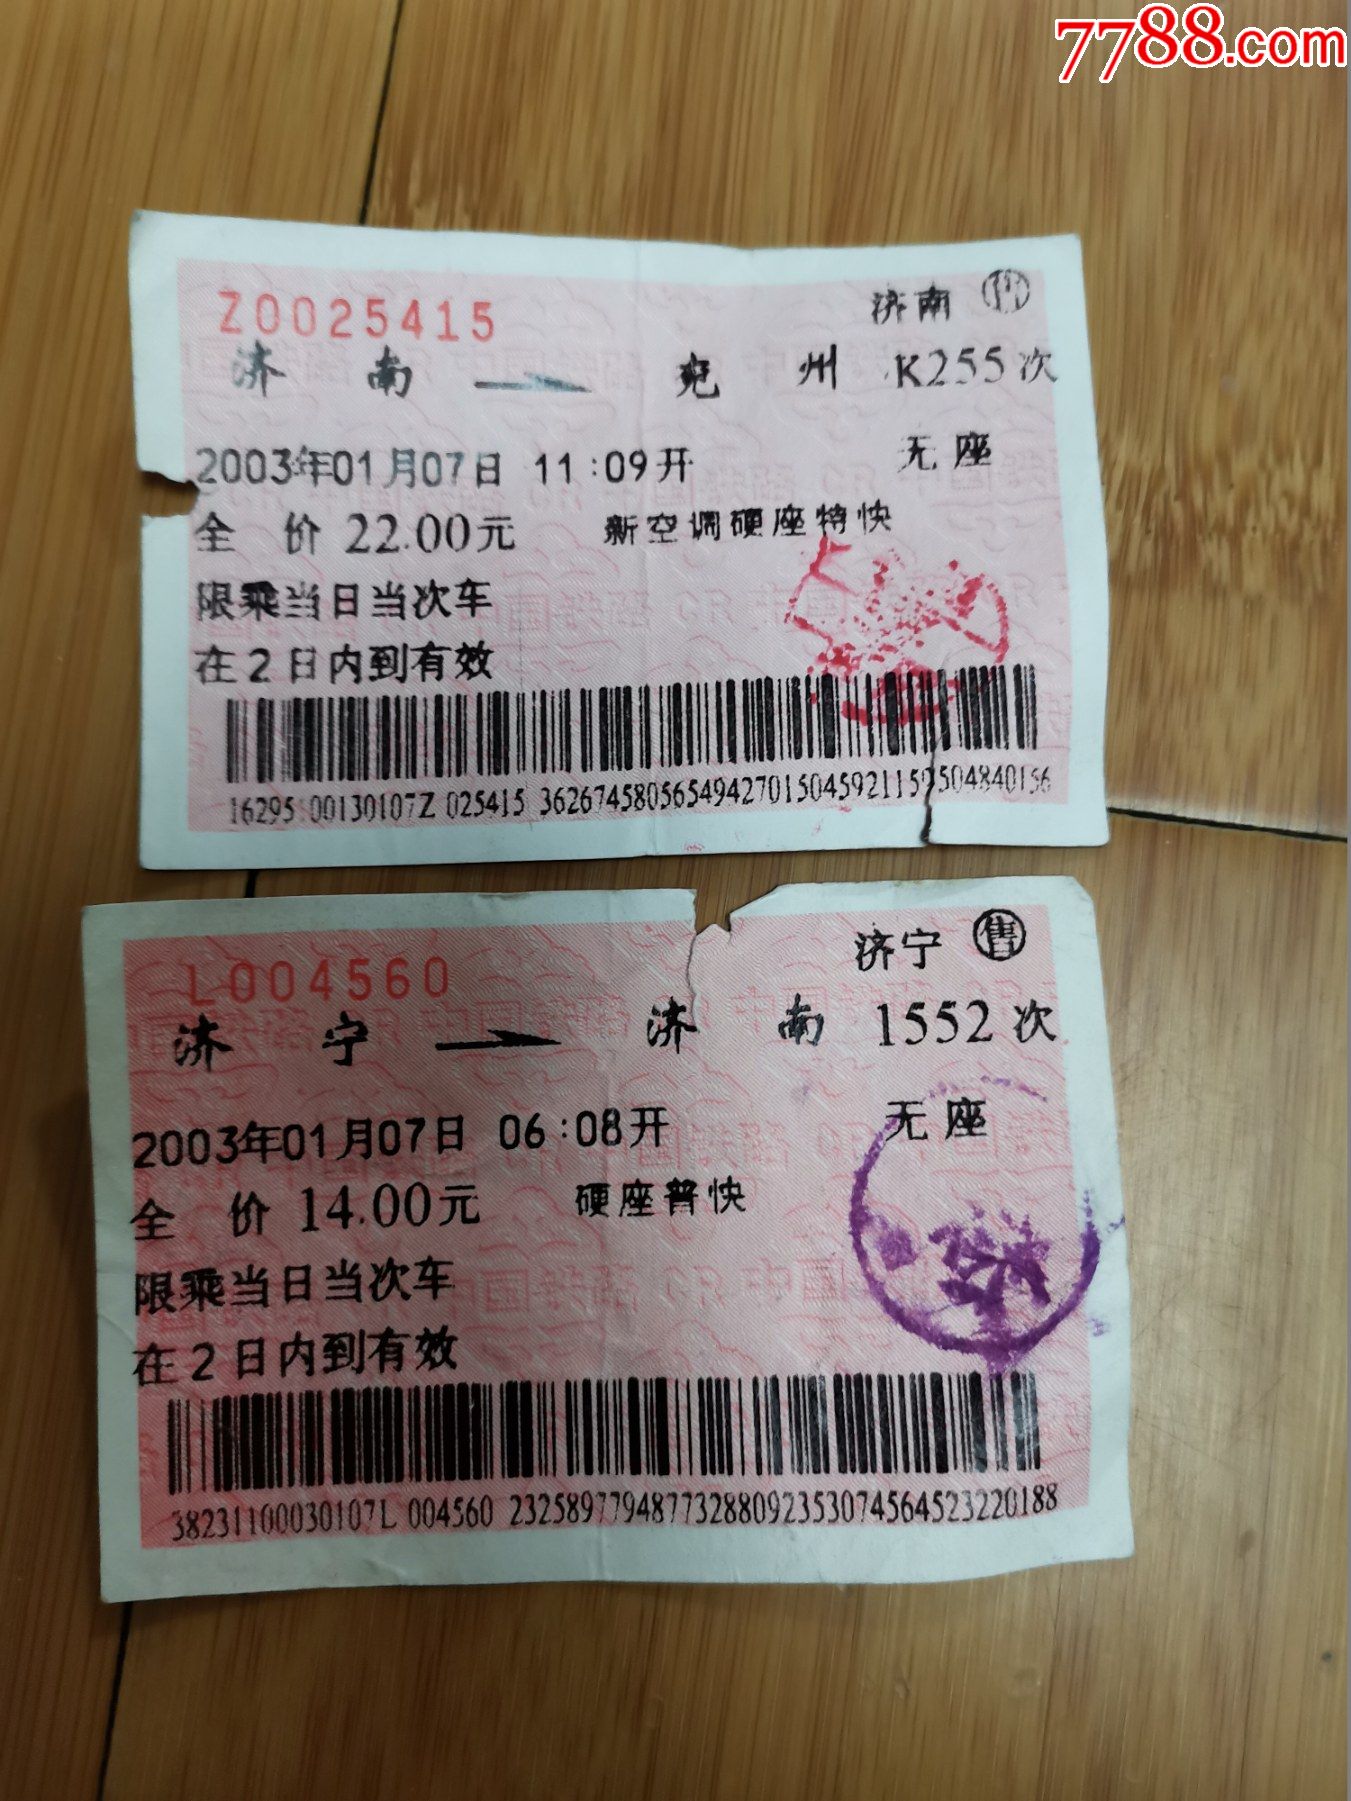 1996年济南——济宁蓝色火车票-价格:40元-se90408887-火车票-零售-7788收藏__收藏热线